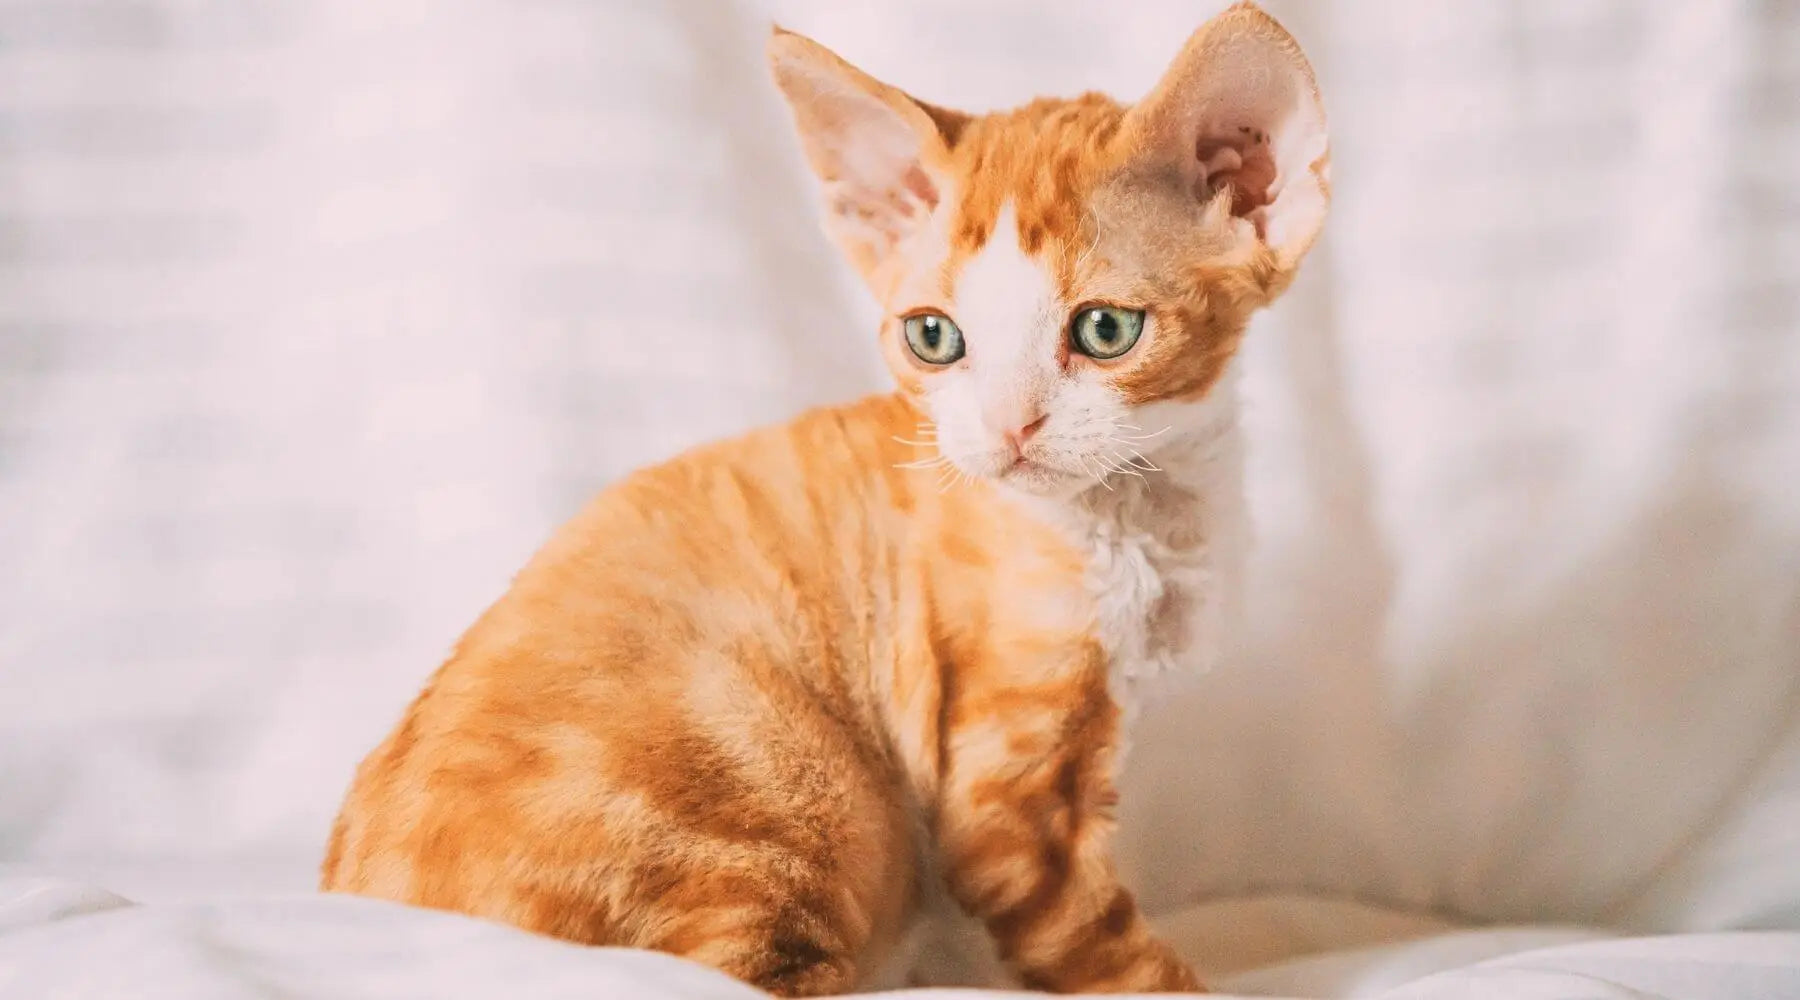 Breed of orange cat